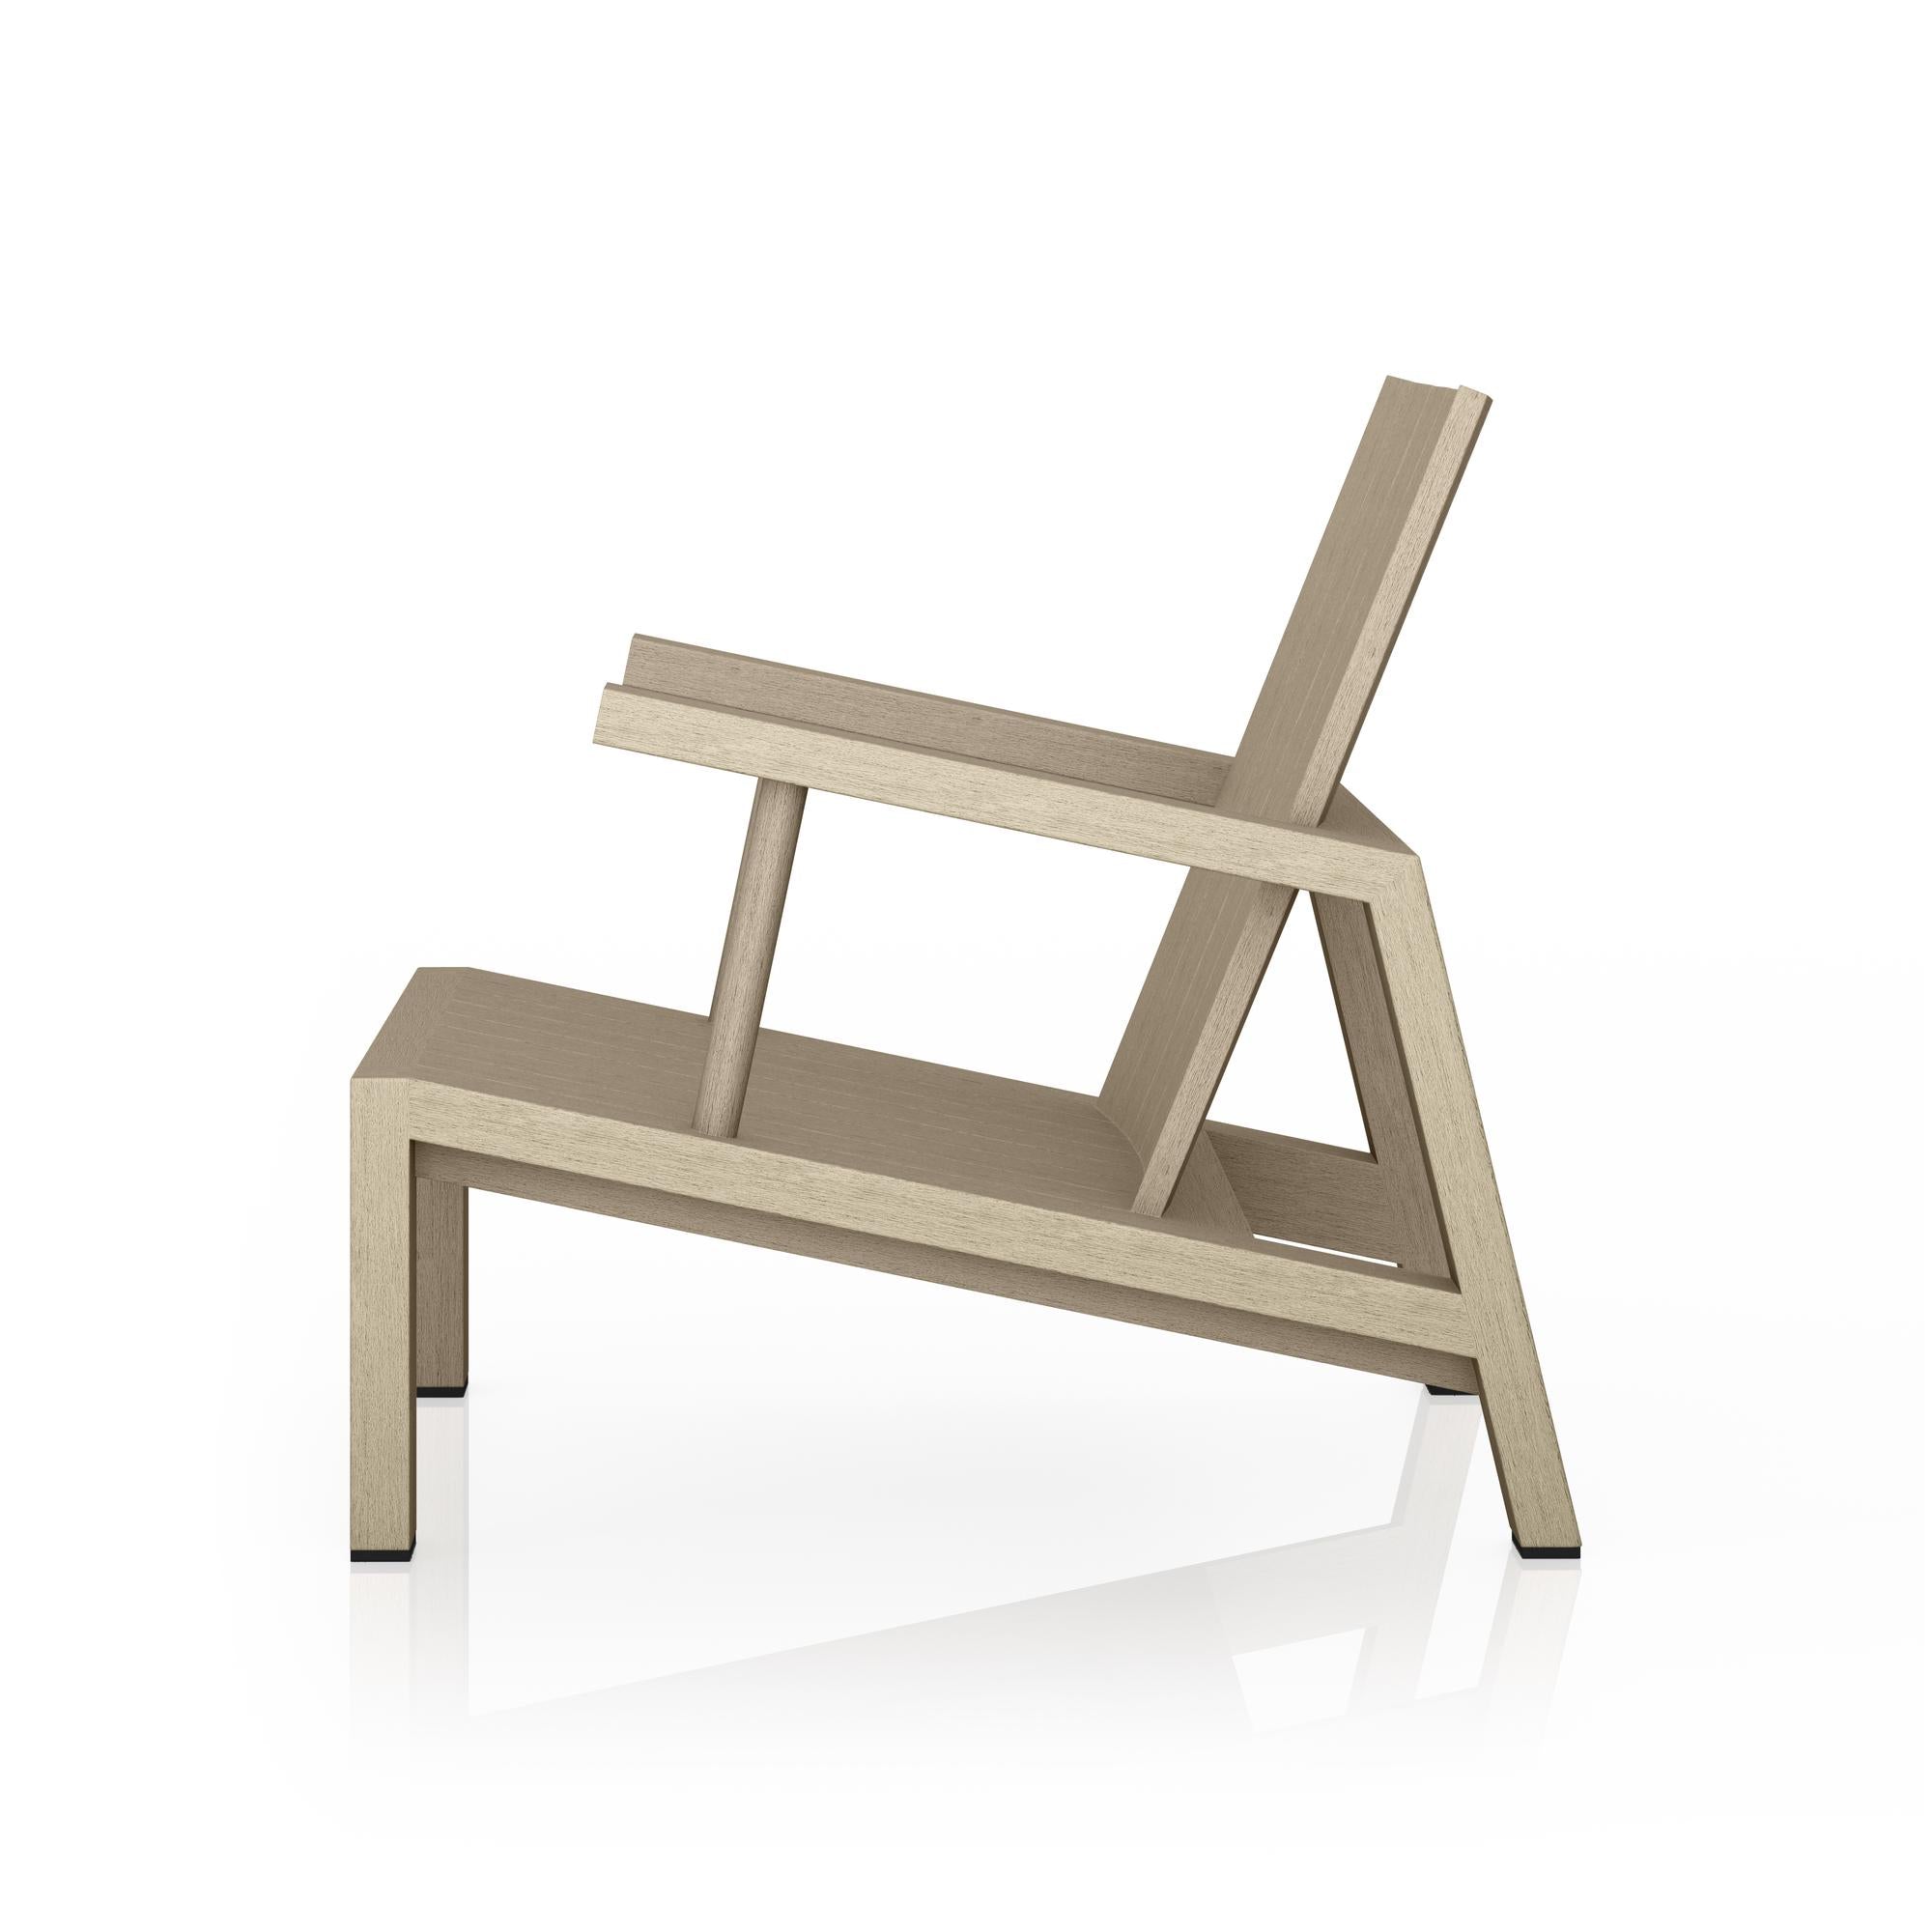 Dorsey Outdoor Chair - StyleMeGHD - Modern Outdoor Furniture